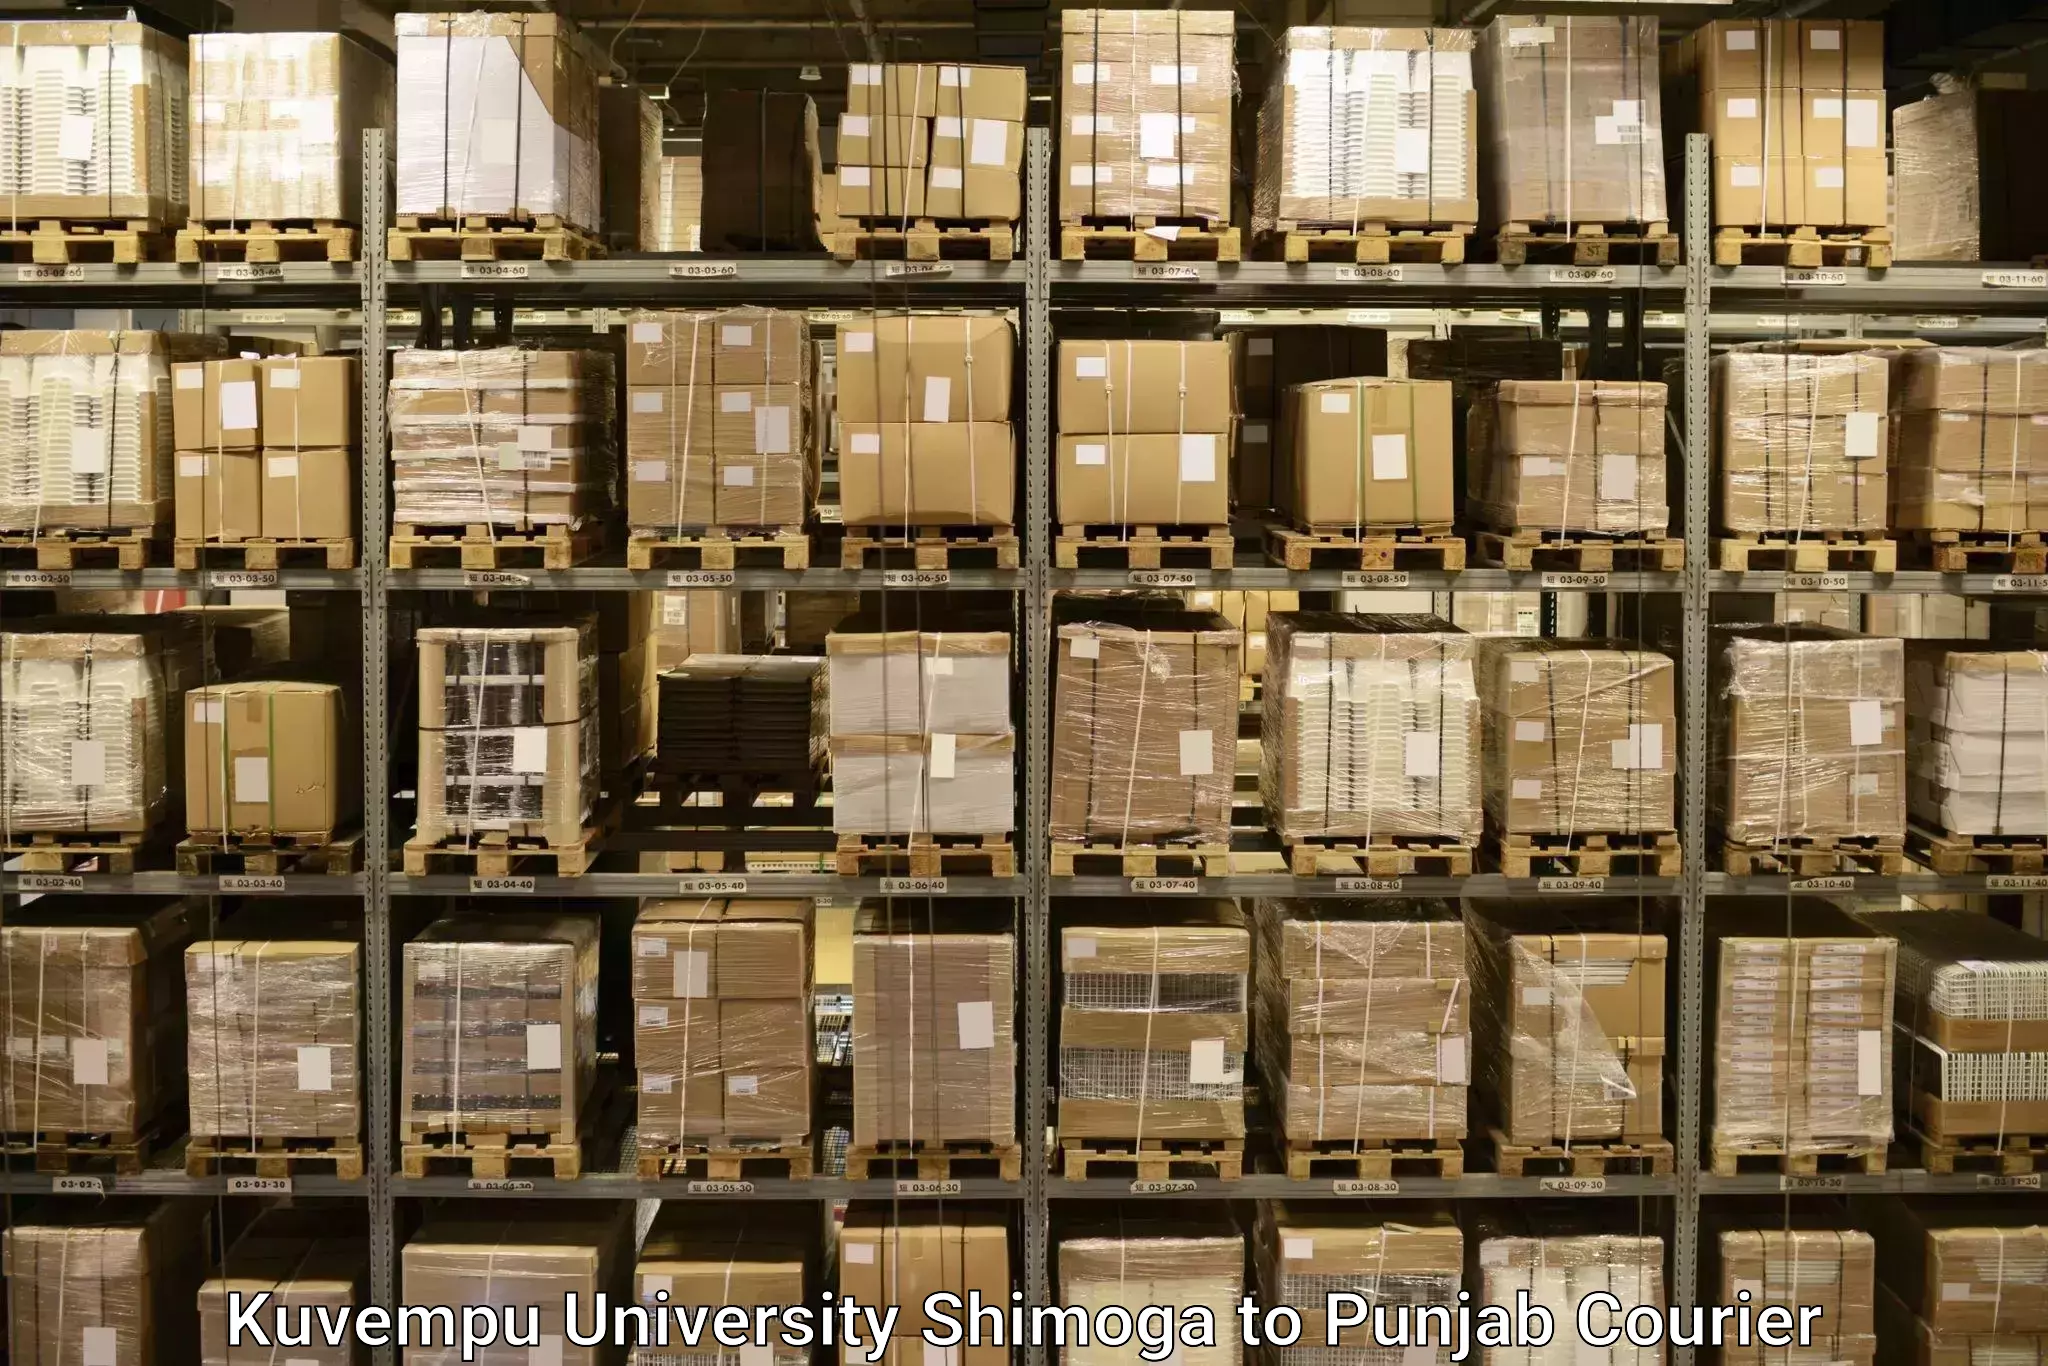 Luggage delivery network Kuvempu University Shimoga to Punjab Agricultural University Ludhiana